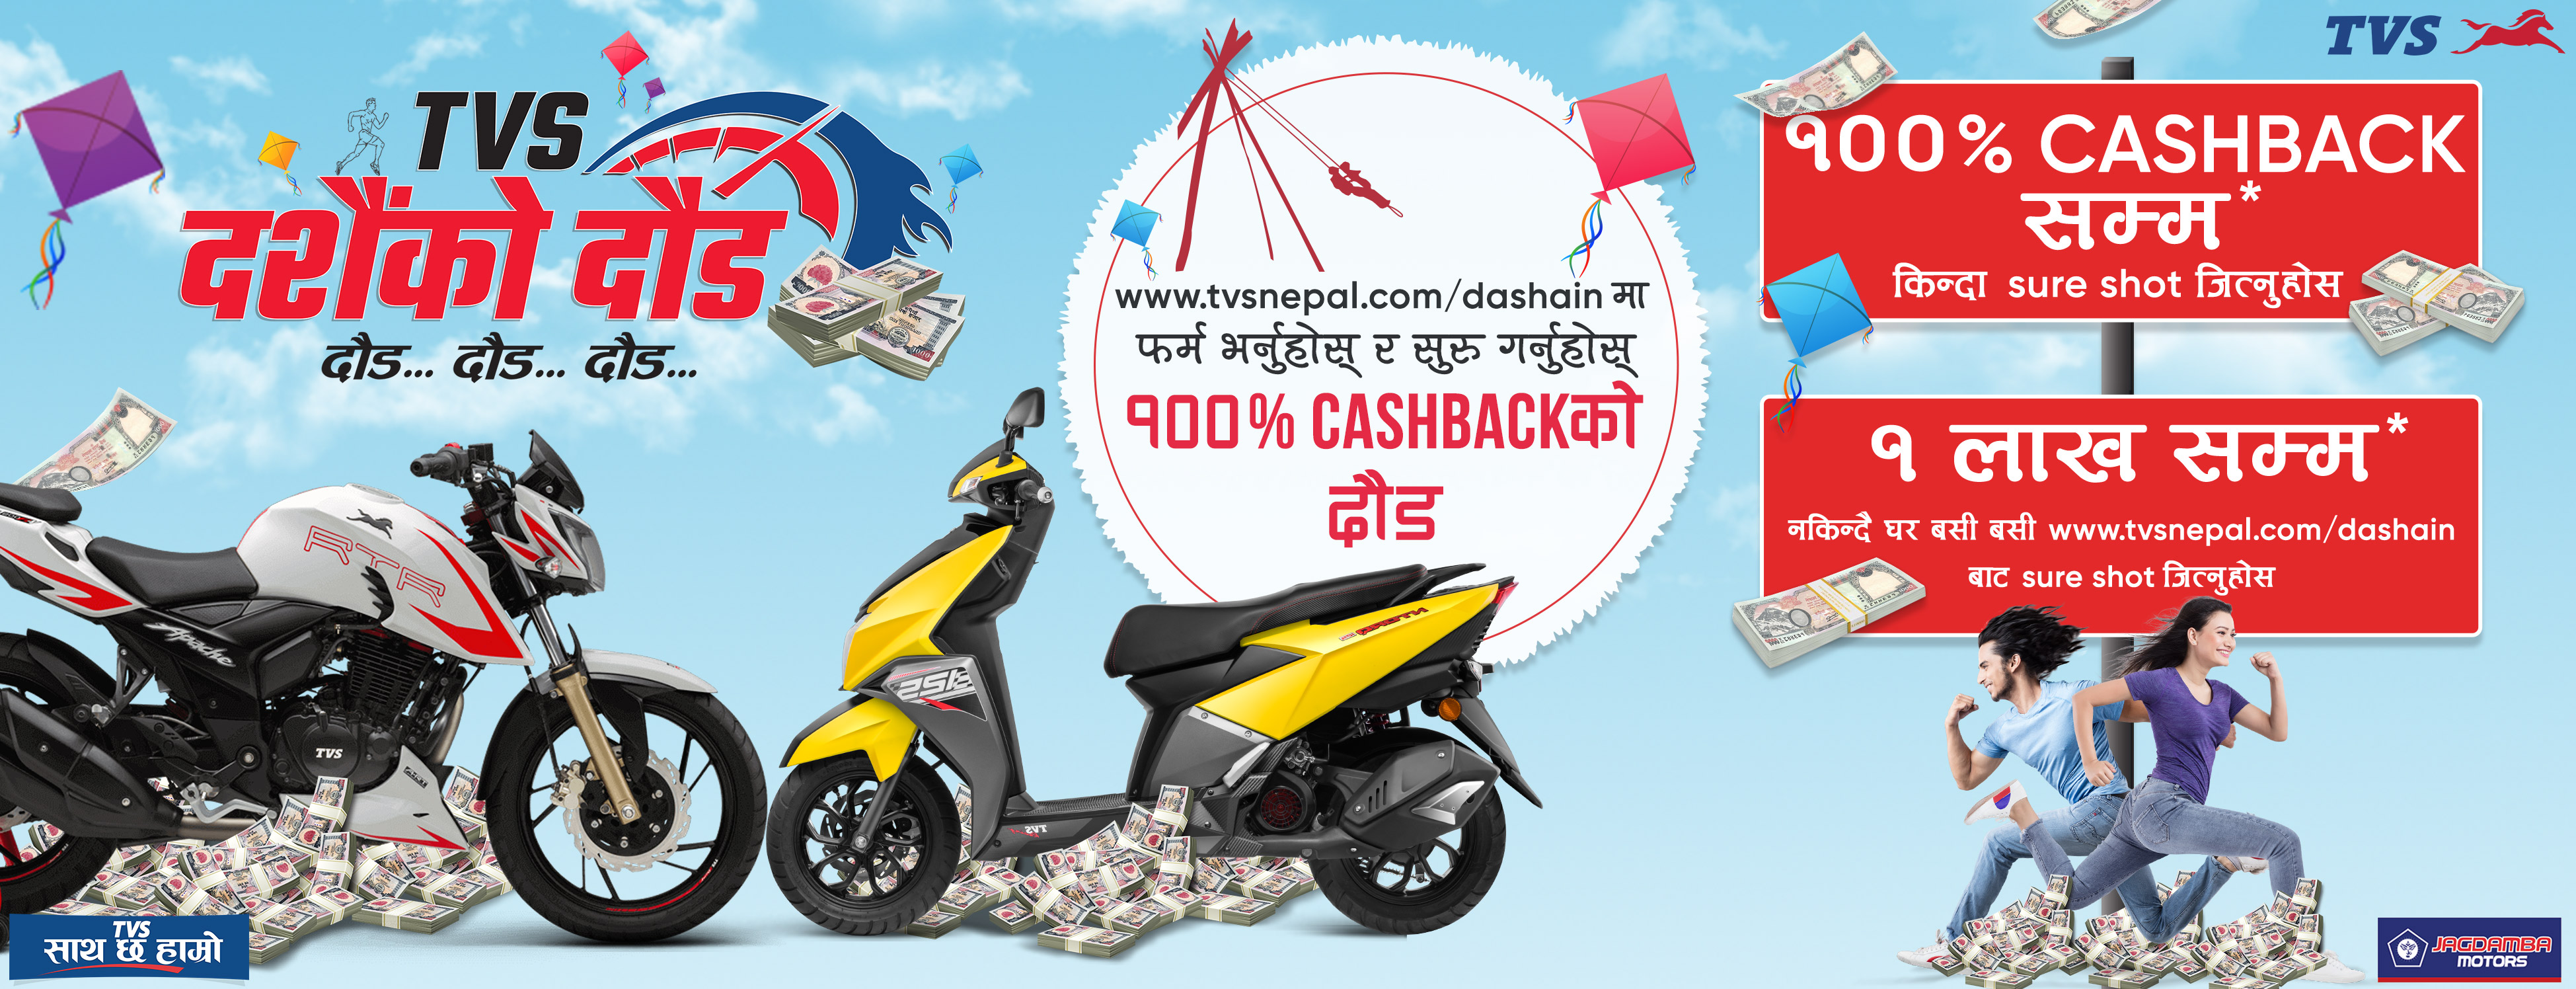 TVS Dashain Ko Daud: Oppurtunity to Win up to Rs. 1 Lakh & 100% Cash Back! (techlekh)